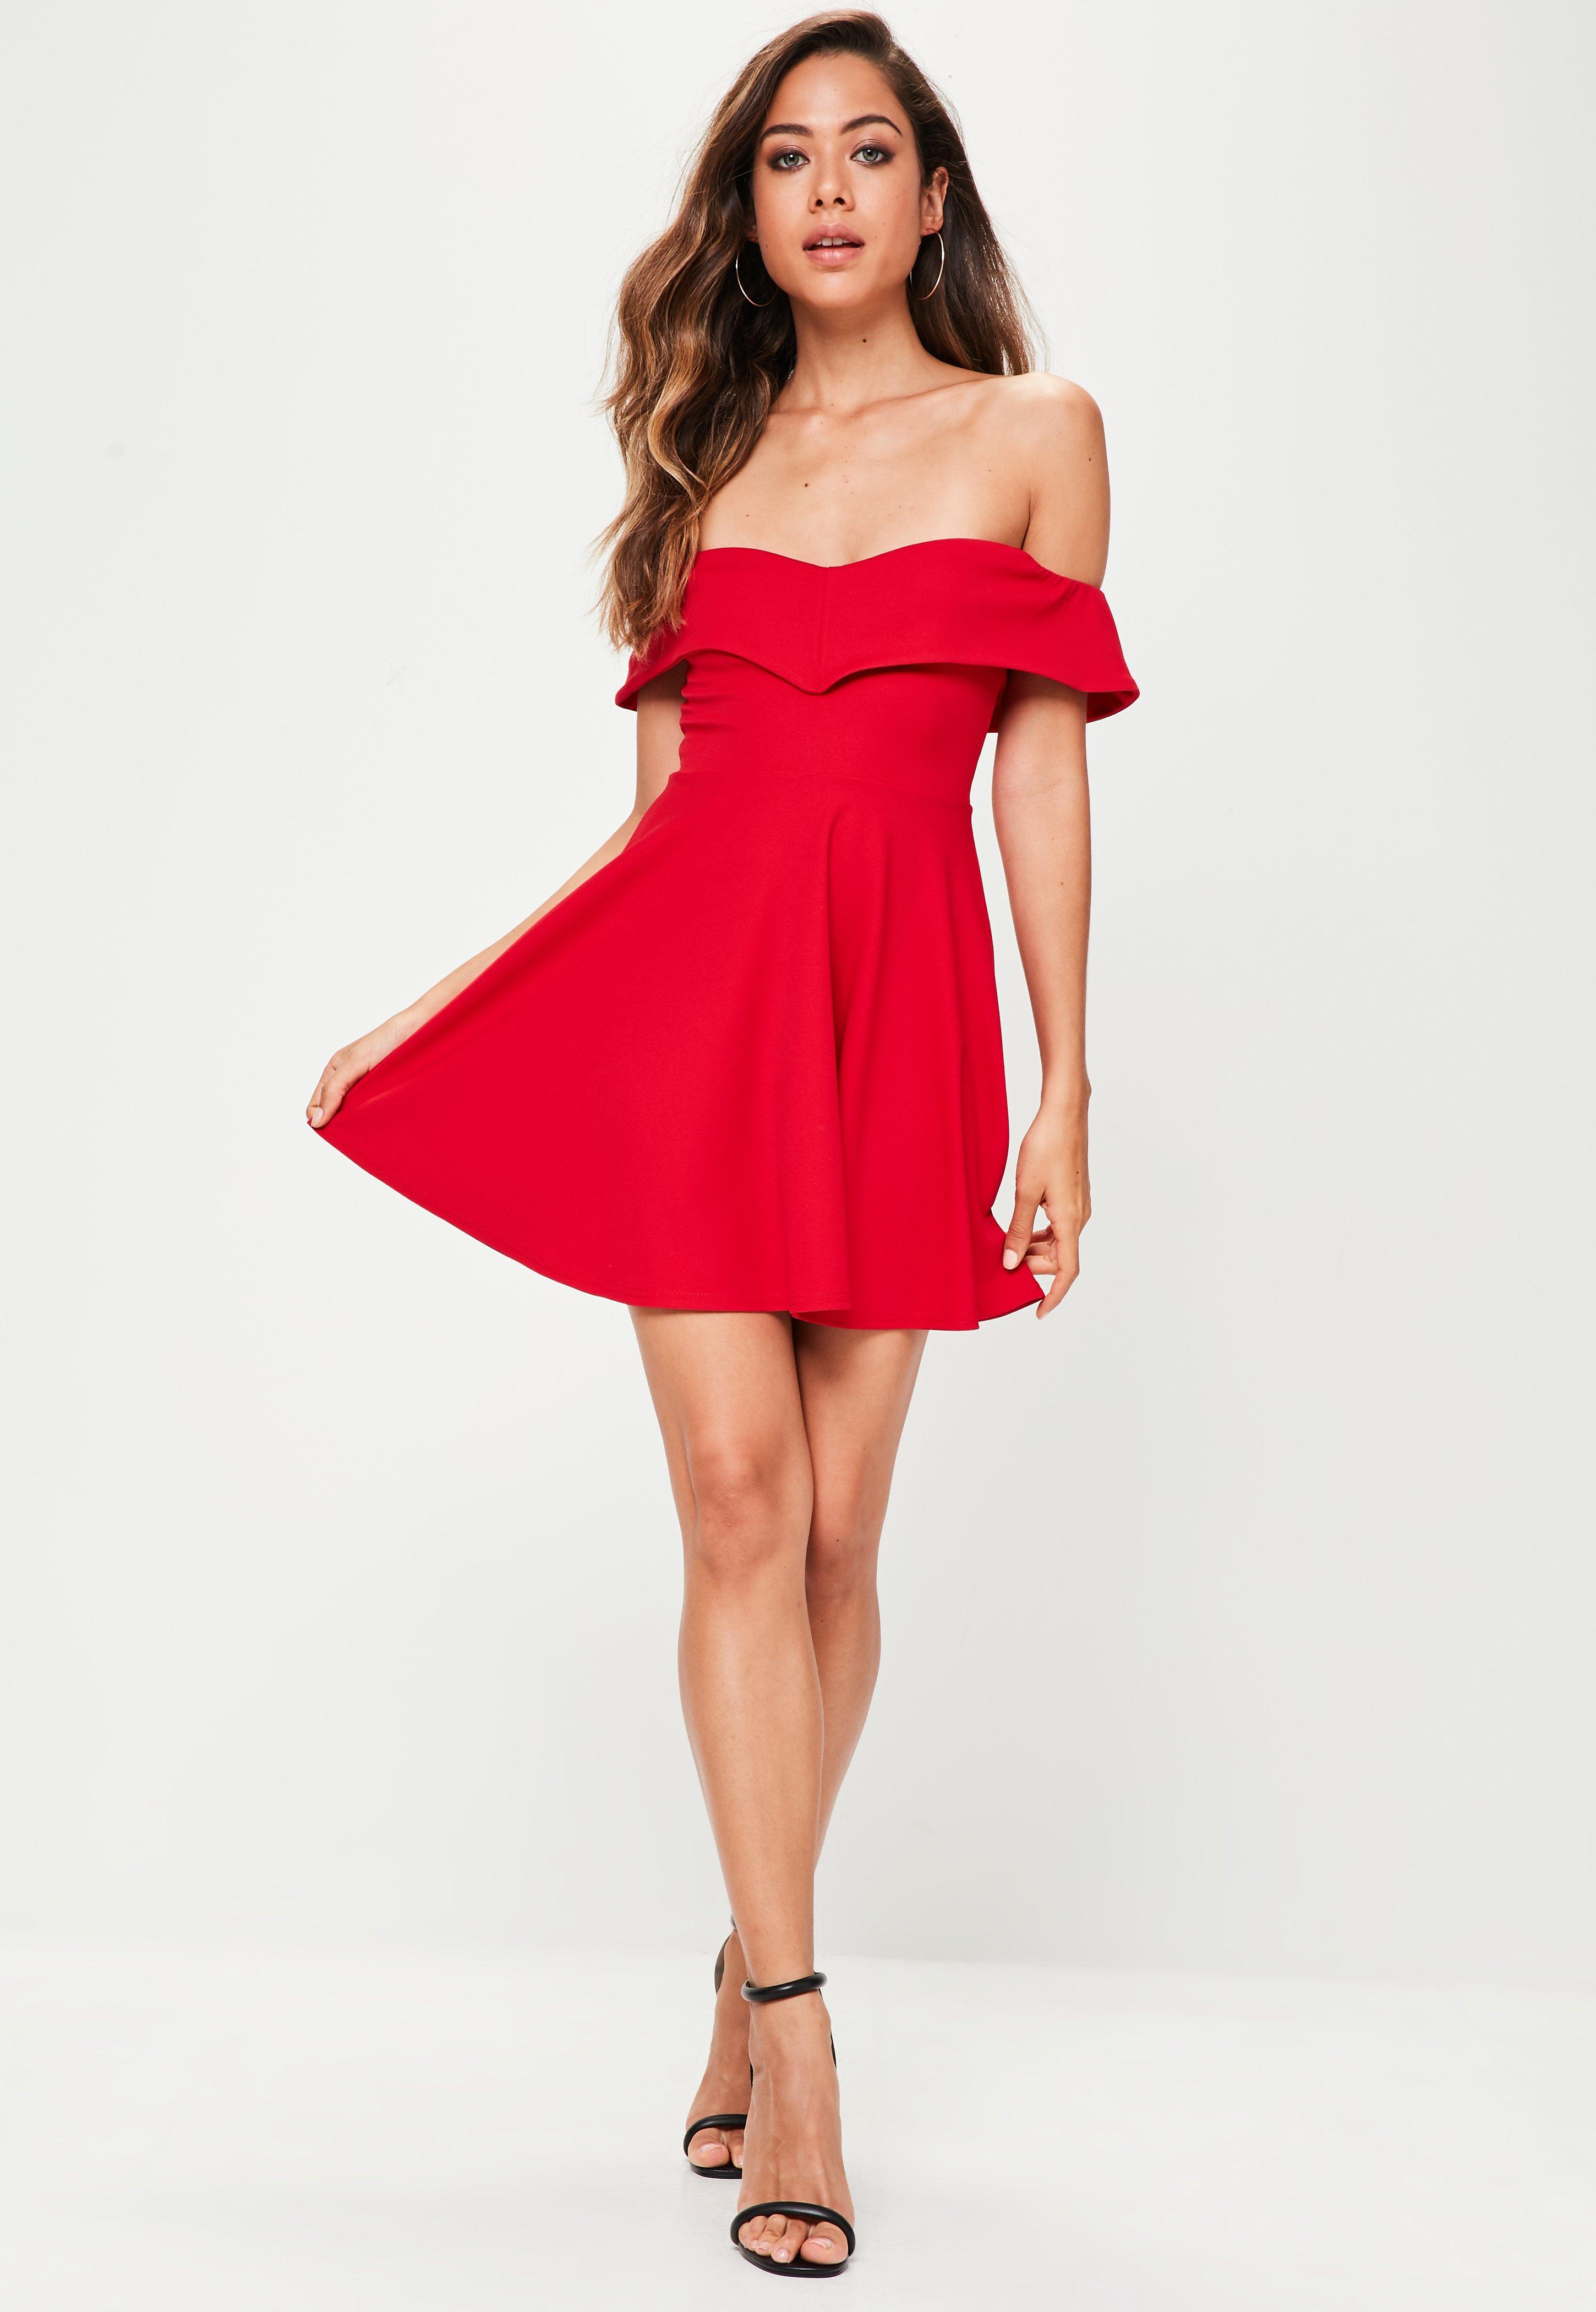 Купить красный вариант. Красивое красное платье. Красное короткое платье. Красное коктейльное платье. Косное платье короткое.